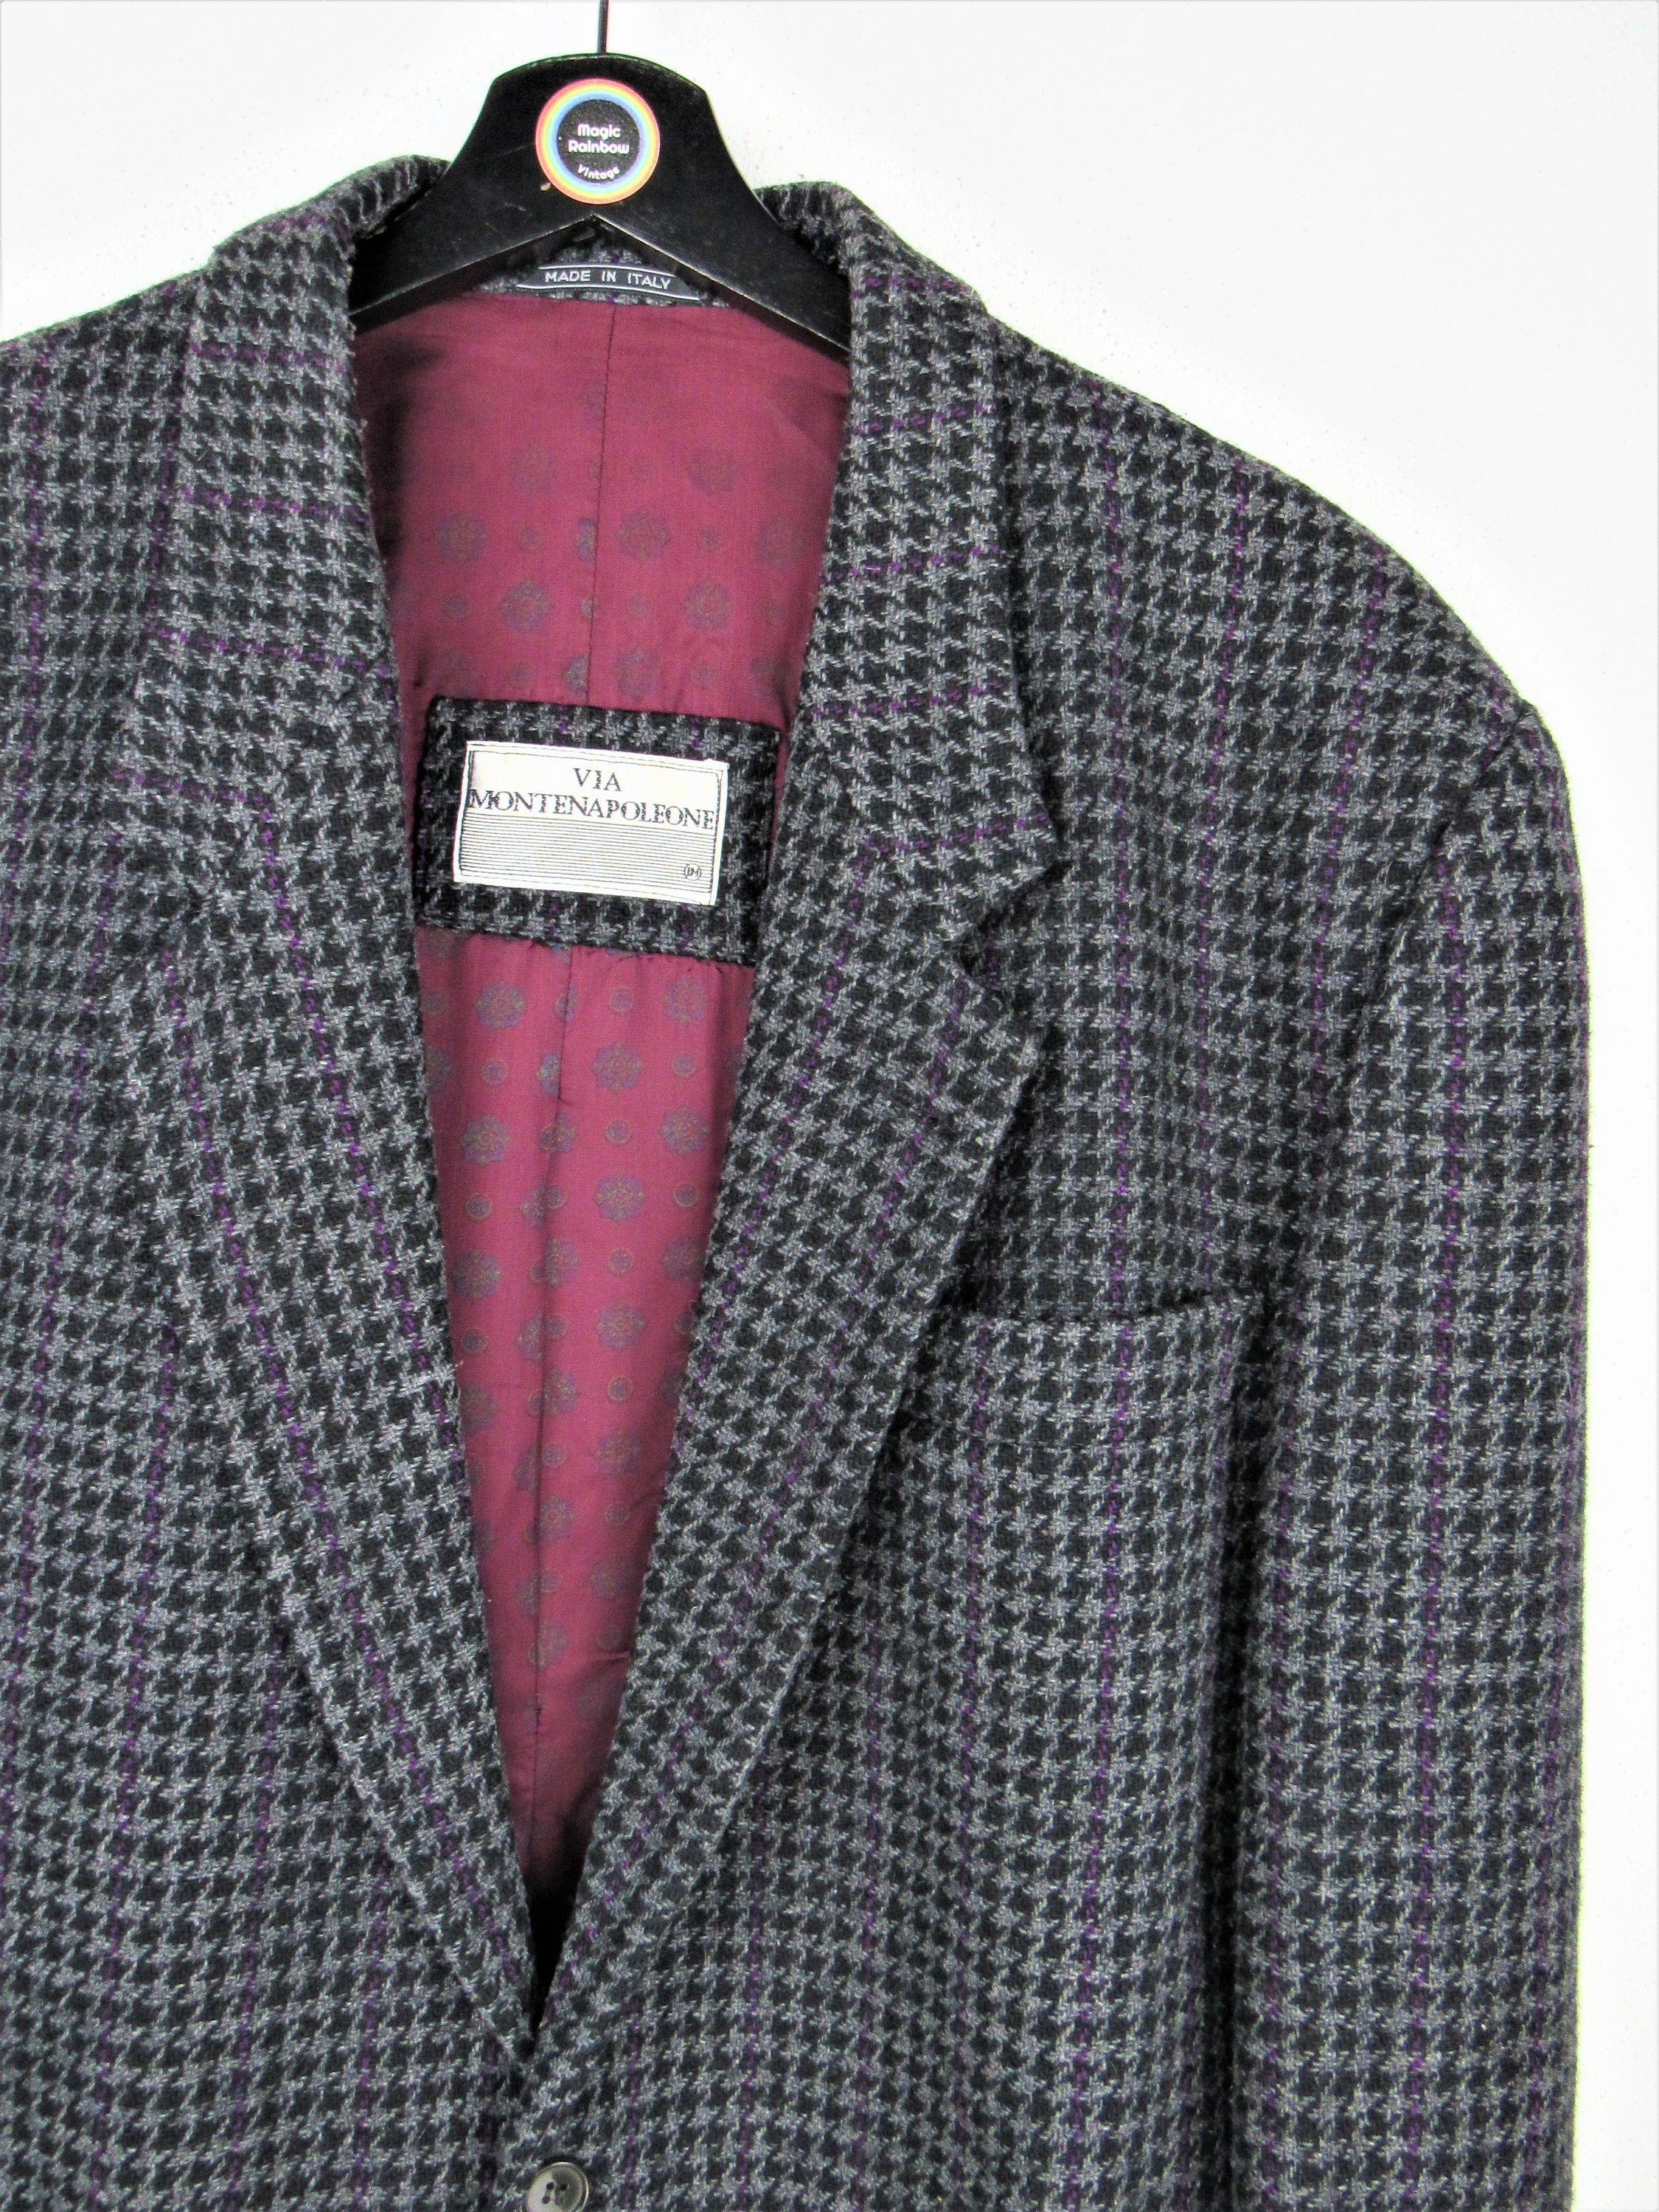 Kleding Gender-neutrale kleding volwassenen Blazers unisex jas gemaakt in Frankrijk vintage van de jaren '70 Grijze Blazer De Fursac in wol 